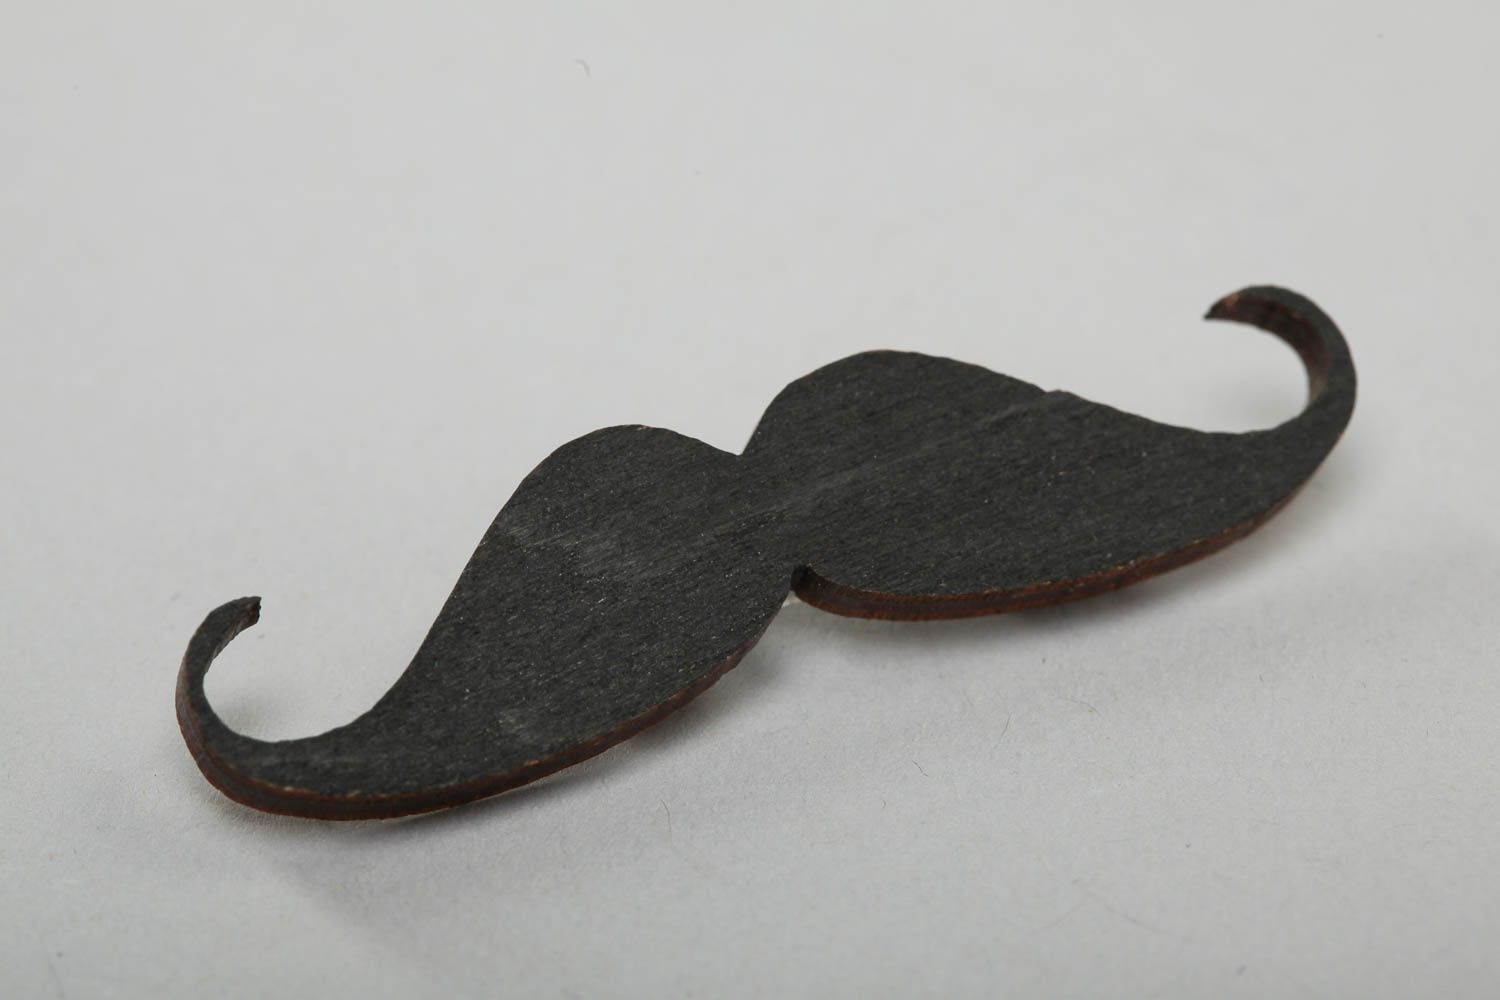 Originelle Schnurrbart Brosche schwarz aus Furnierplatte mit Acrylfarben bemalt foto 2